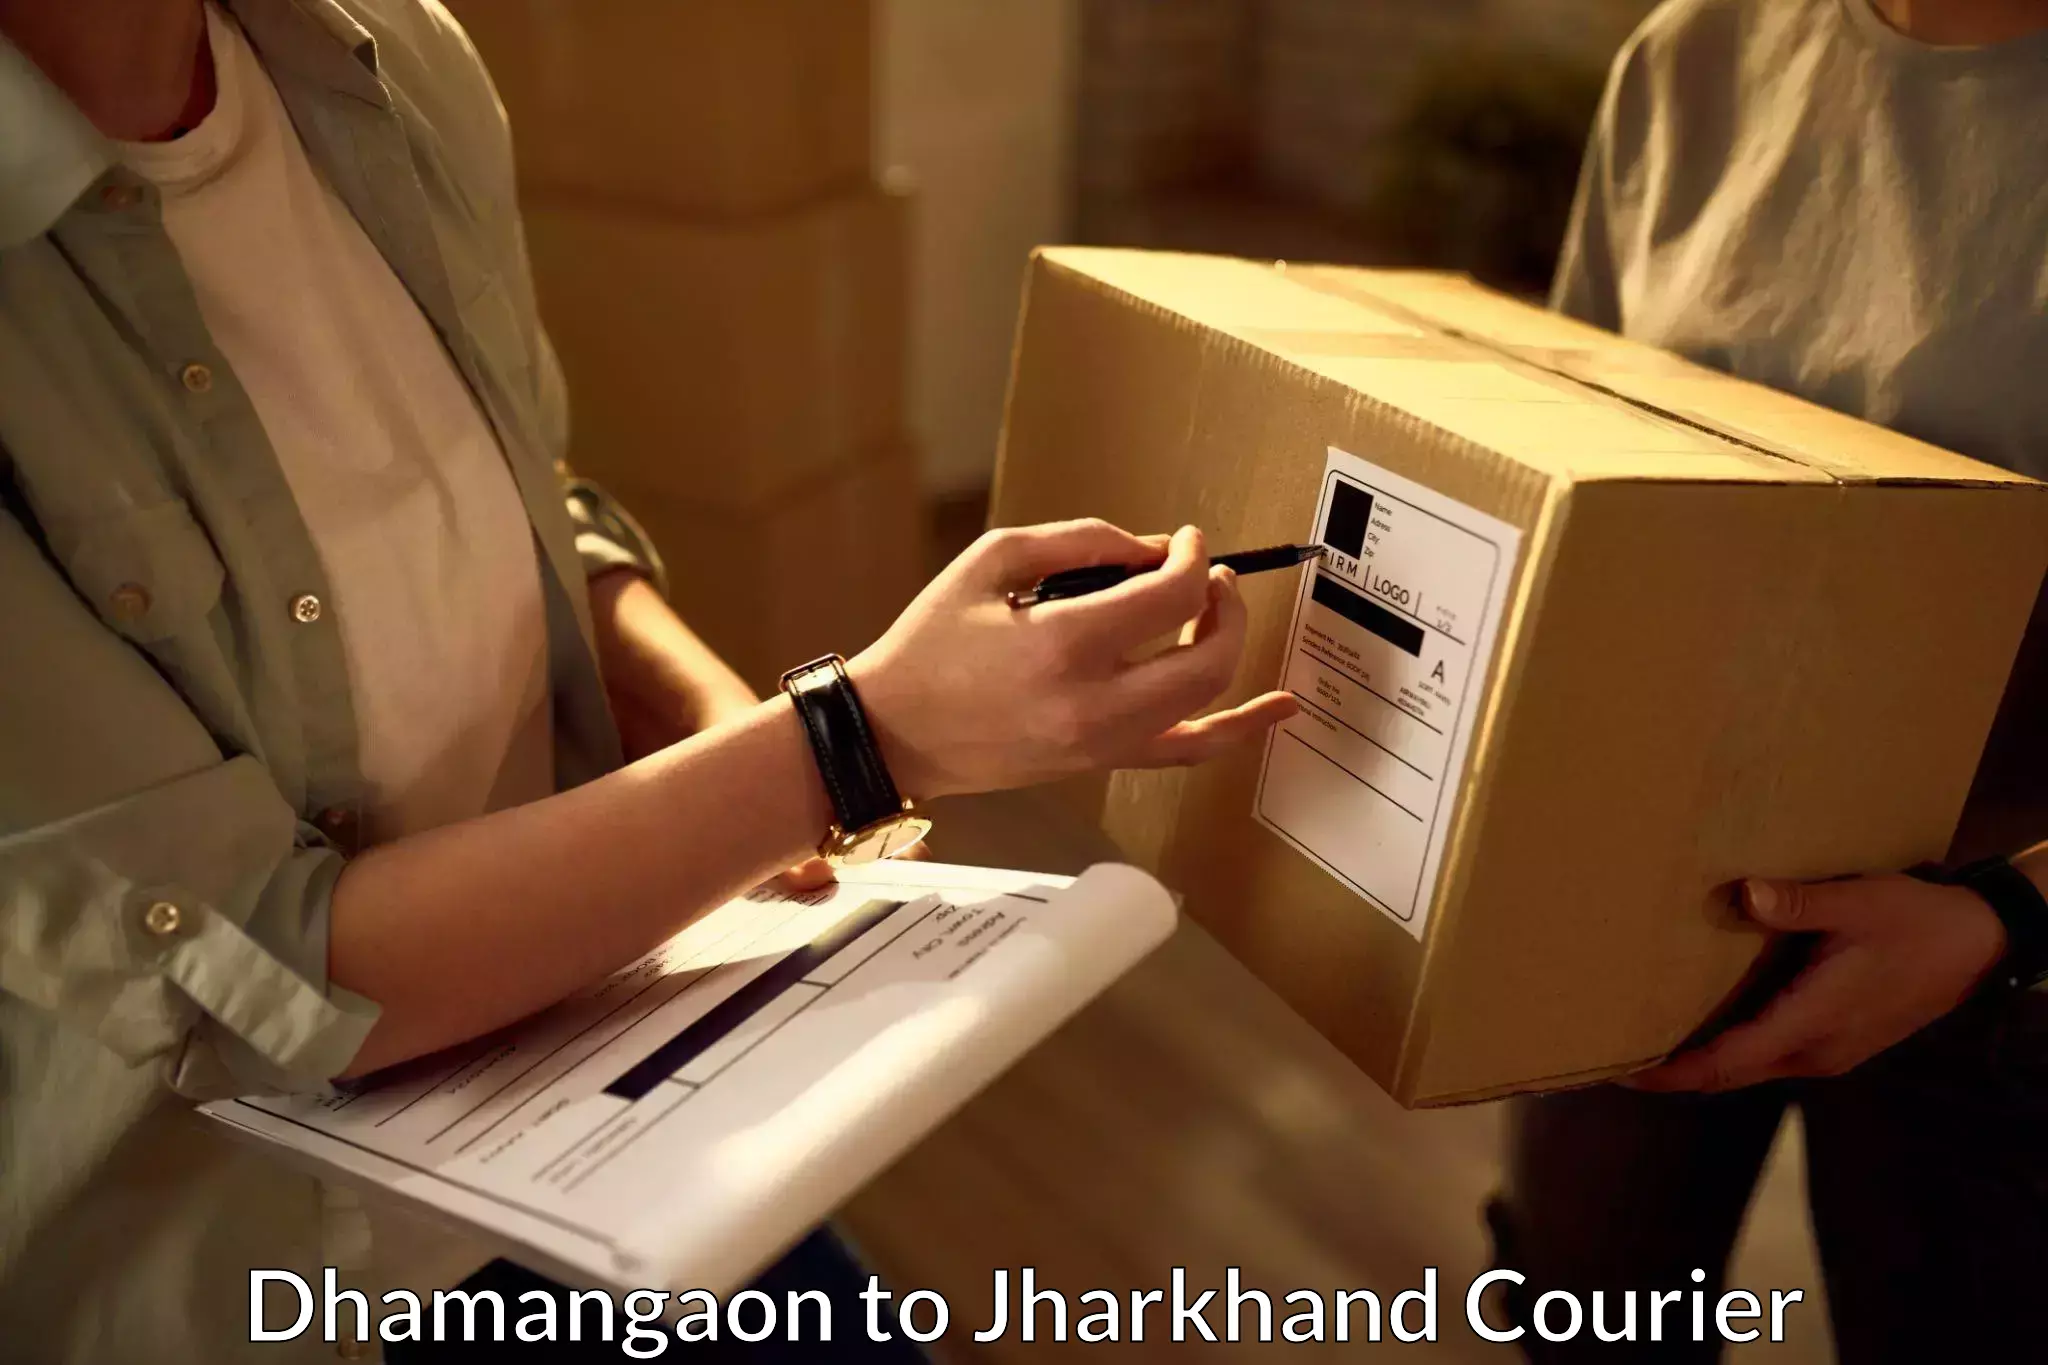 Express shipping Dhamangaon to Godda